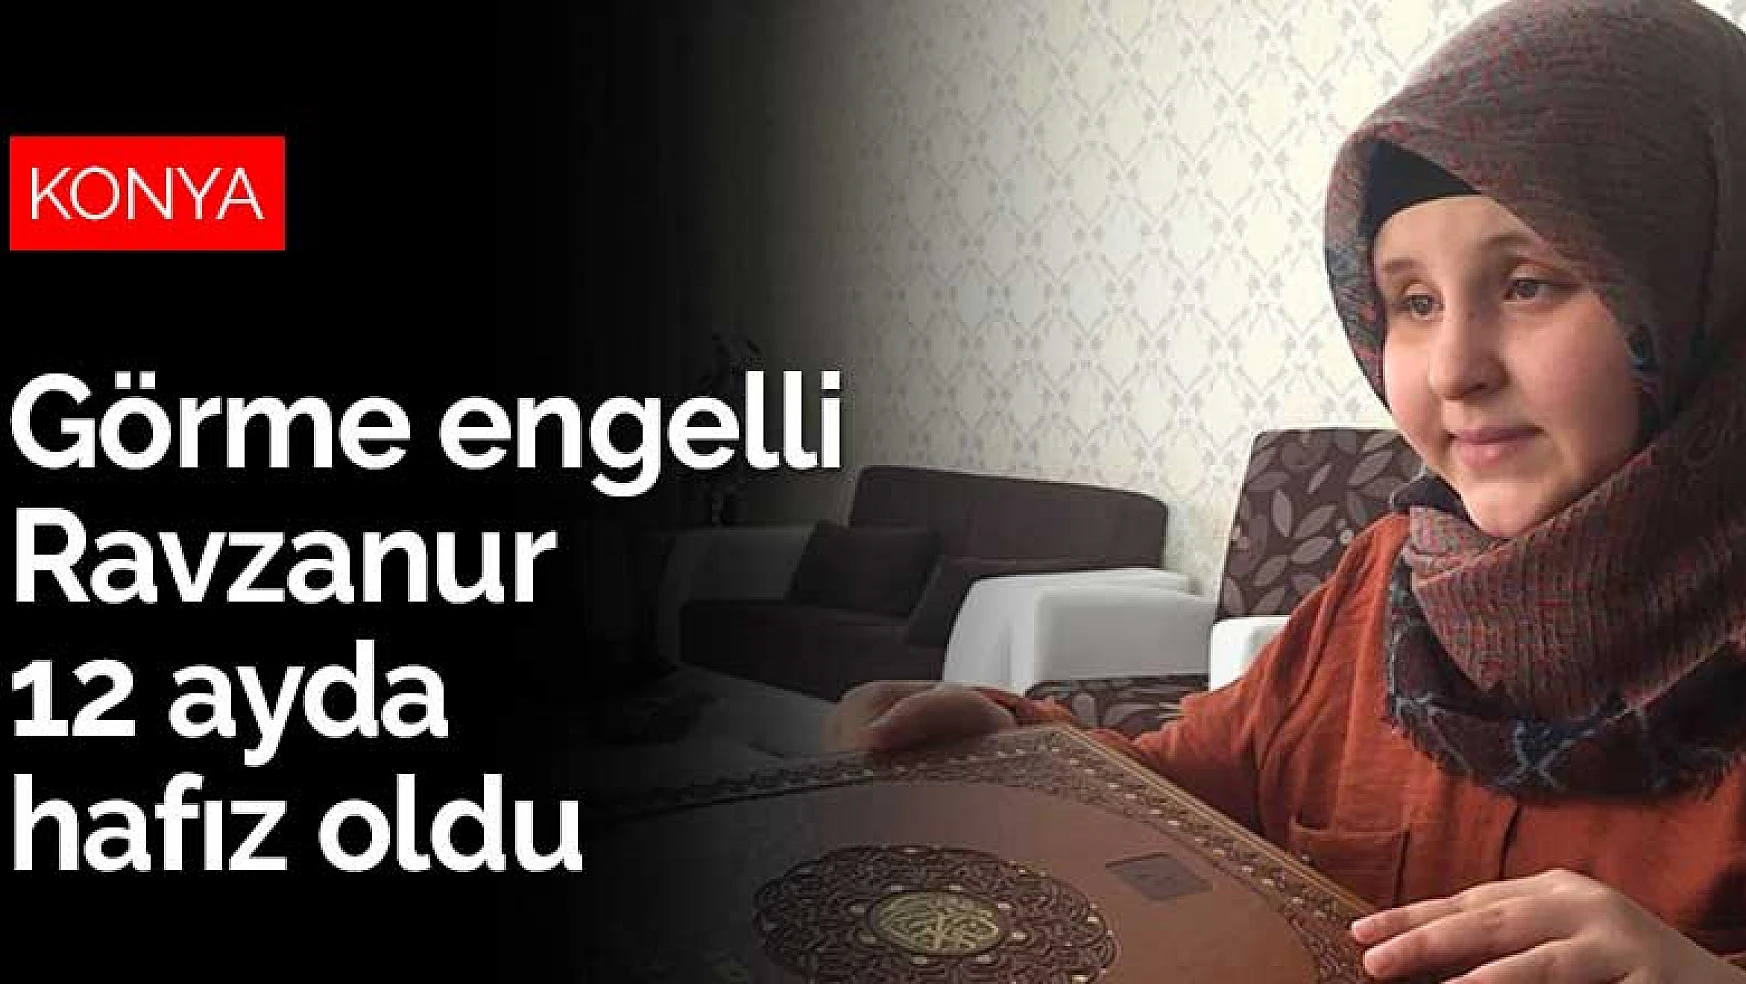 Konya'da ortaokul öğrencisi görme engelli Ravzanur 12 ayda hafız oldu